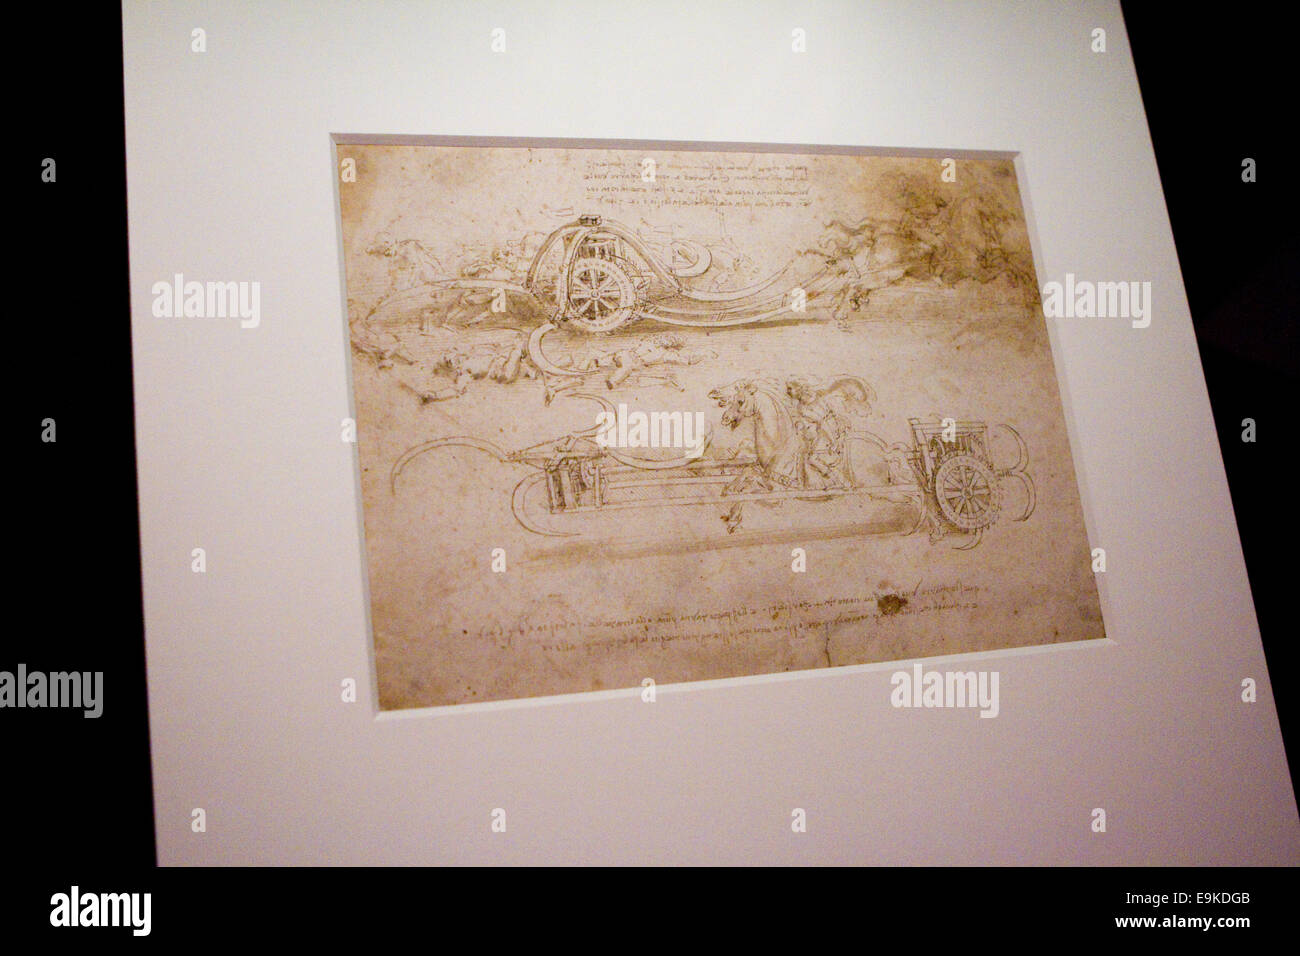 Torino, Italie. 28 octobre 2014. Scythed chariot conçu par Léonard de Vinci. Une exposition de Leonardo et d'autres dessins de l'artiste s'ouvre dans les voûtes de la Bibliothèque Royale de Turin, en Italie. Banque D'Images